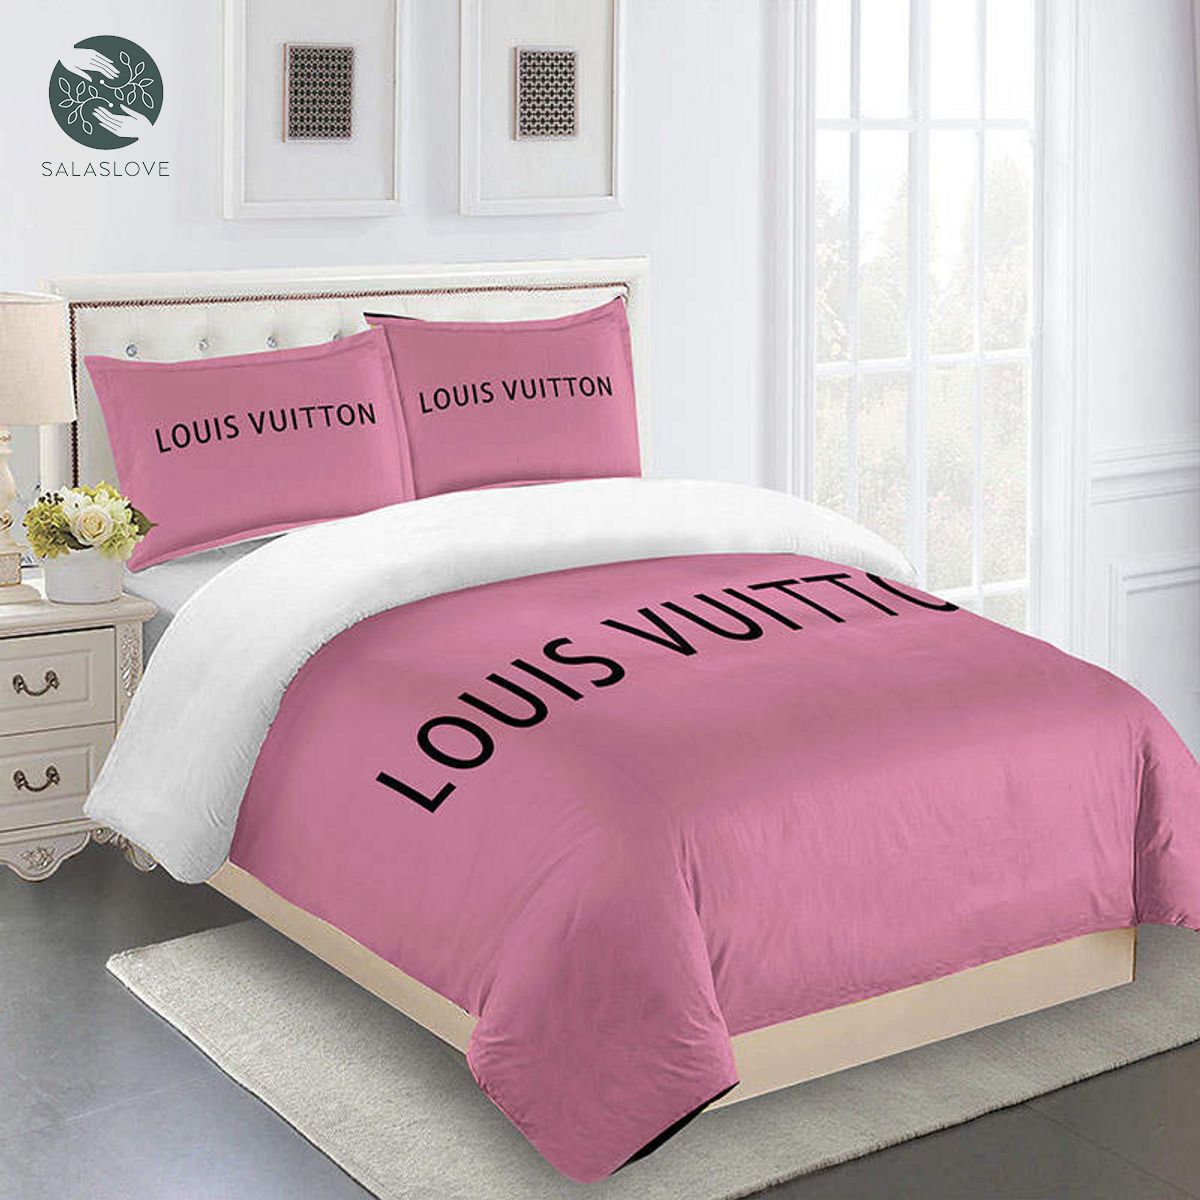 Louis Vuitton Dark Pink Luxury Bedding Set